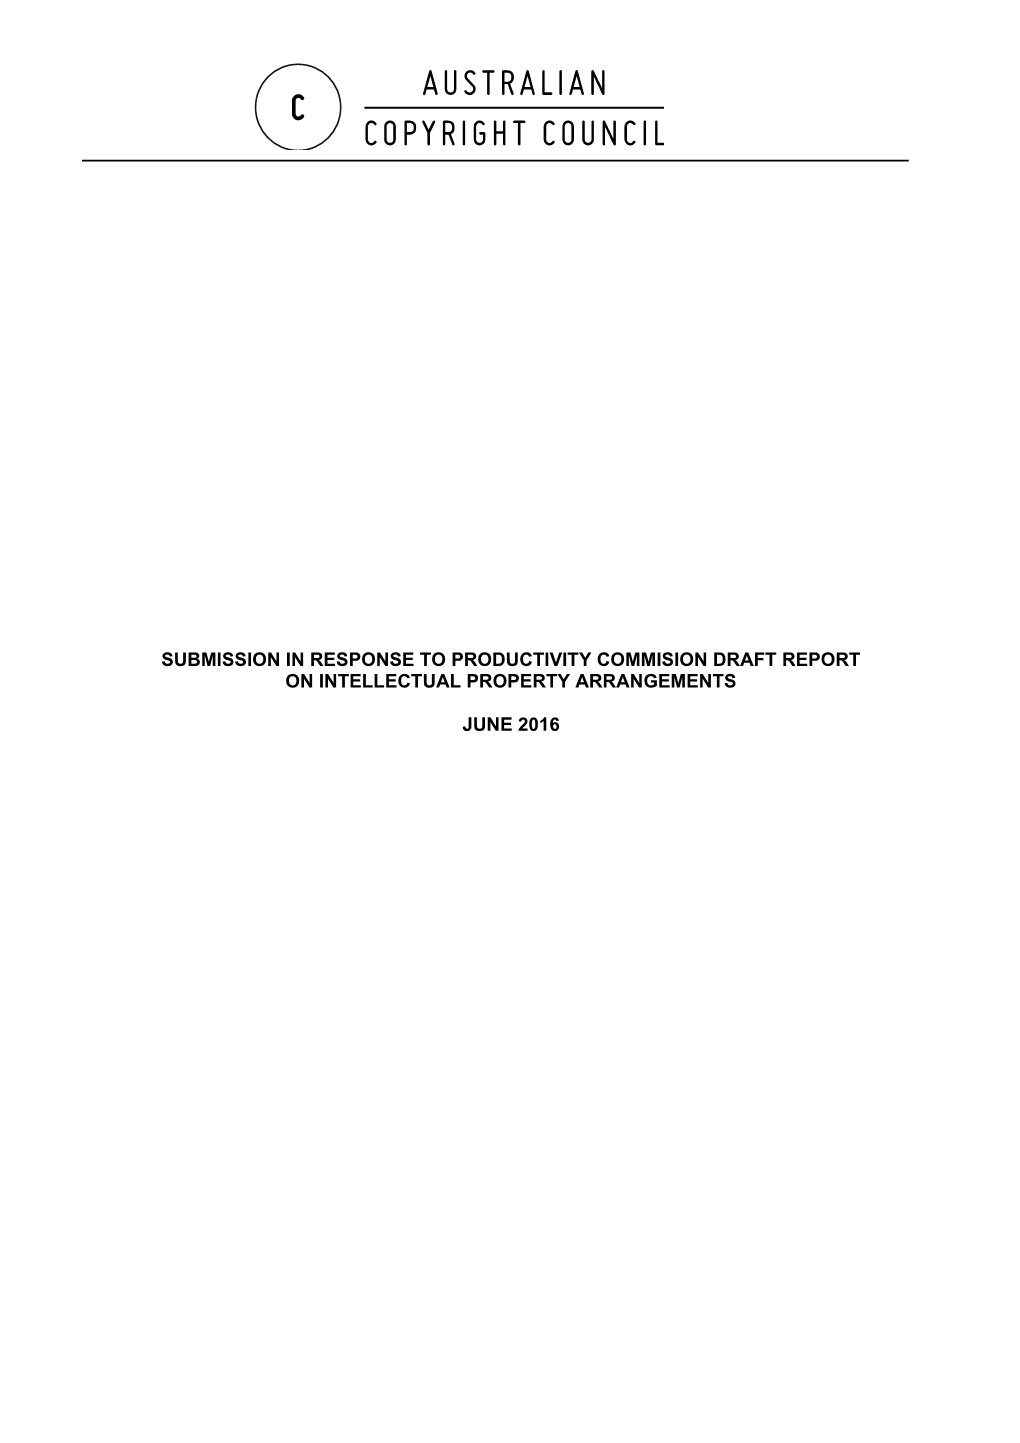 Submission DR543 - Australian Copyright Council - Intellectual Property Arrangements